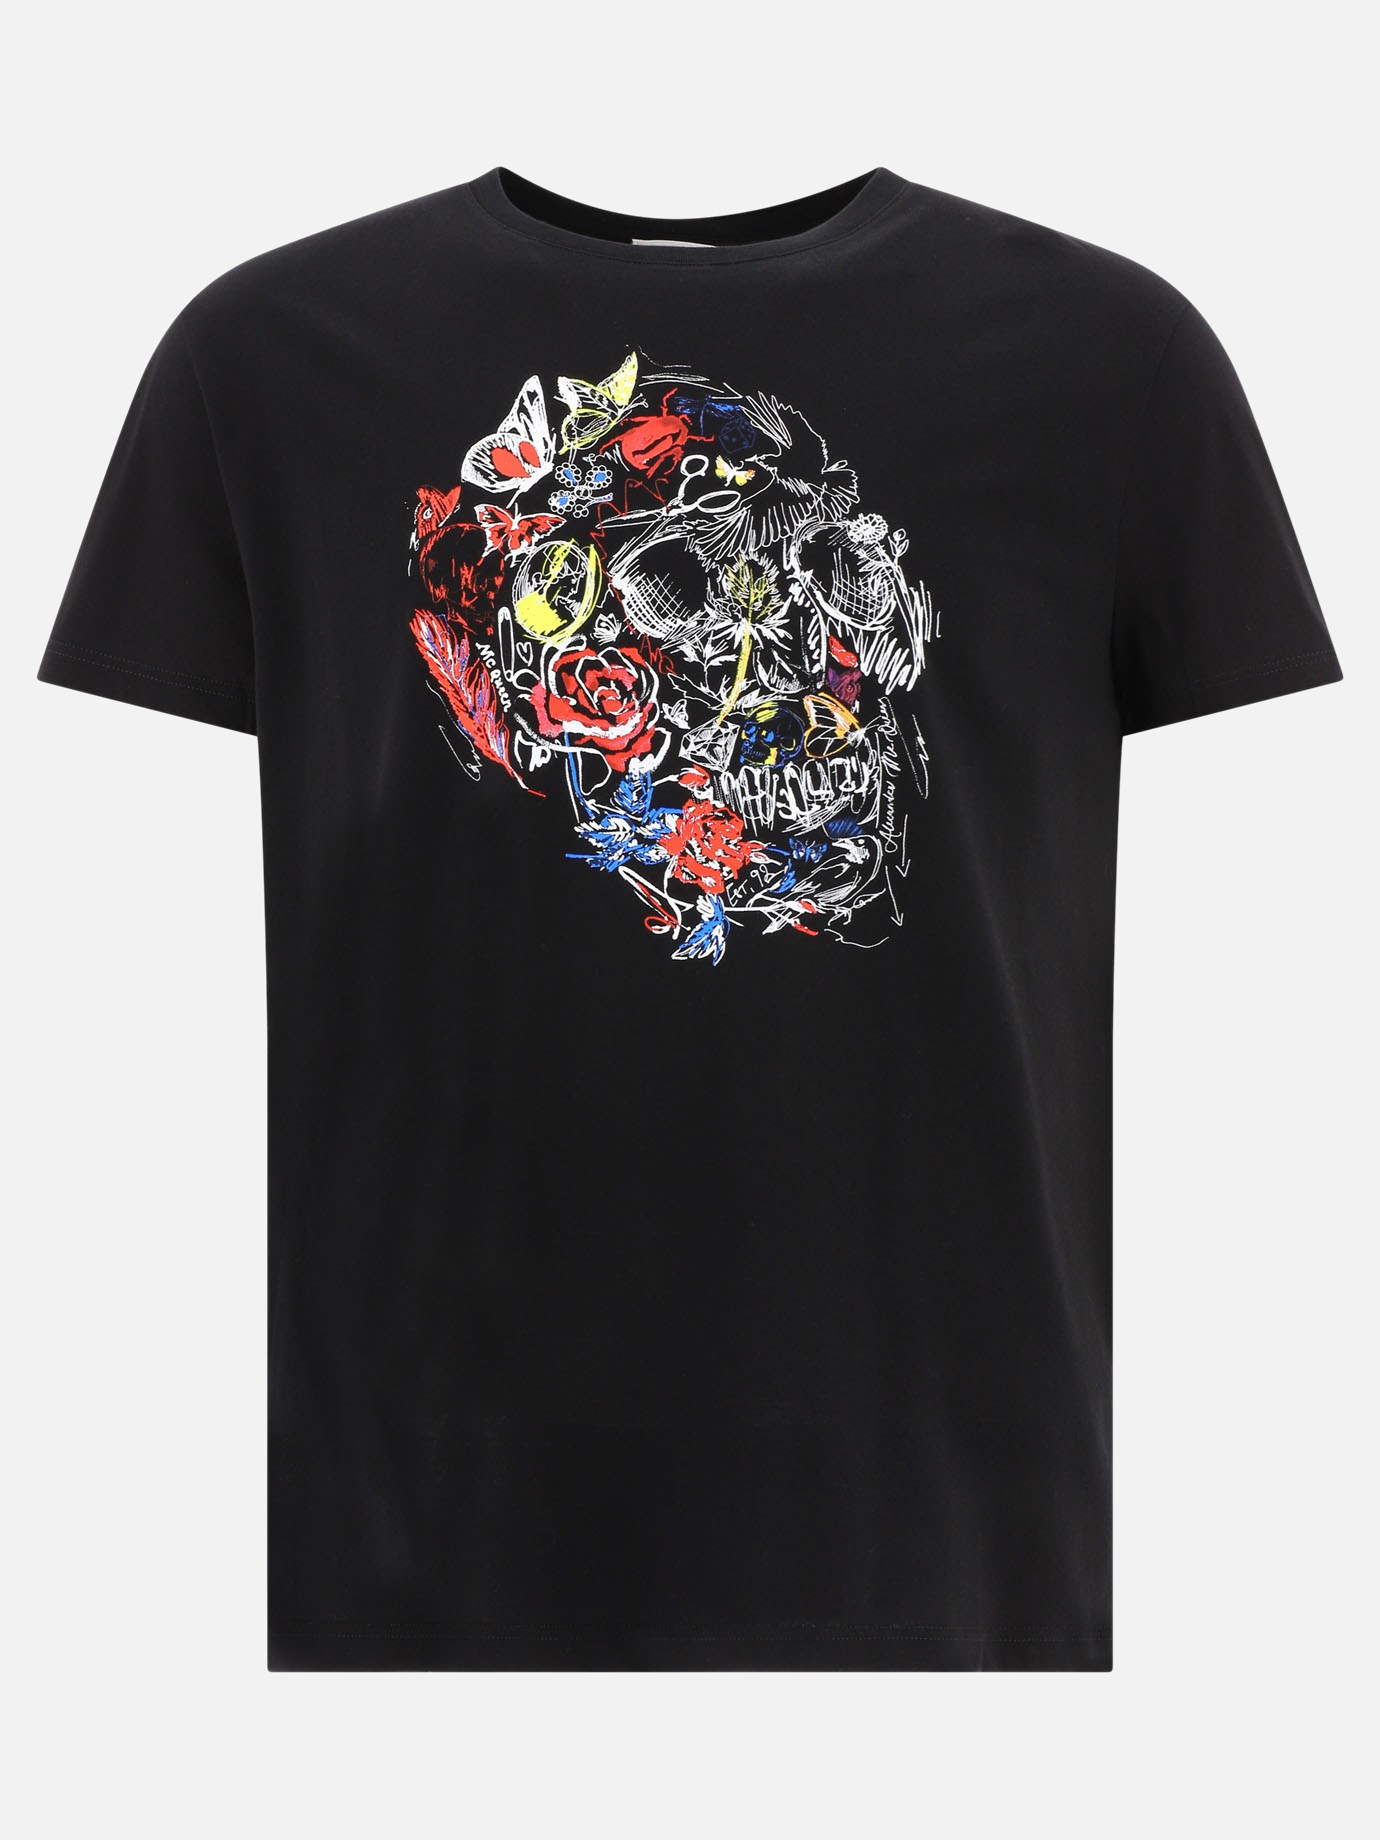  Doodle Skull  t-shirt by Alexander McQueen